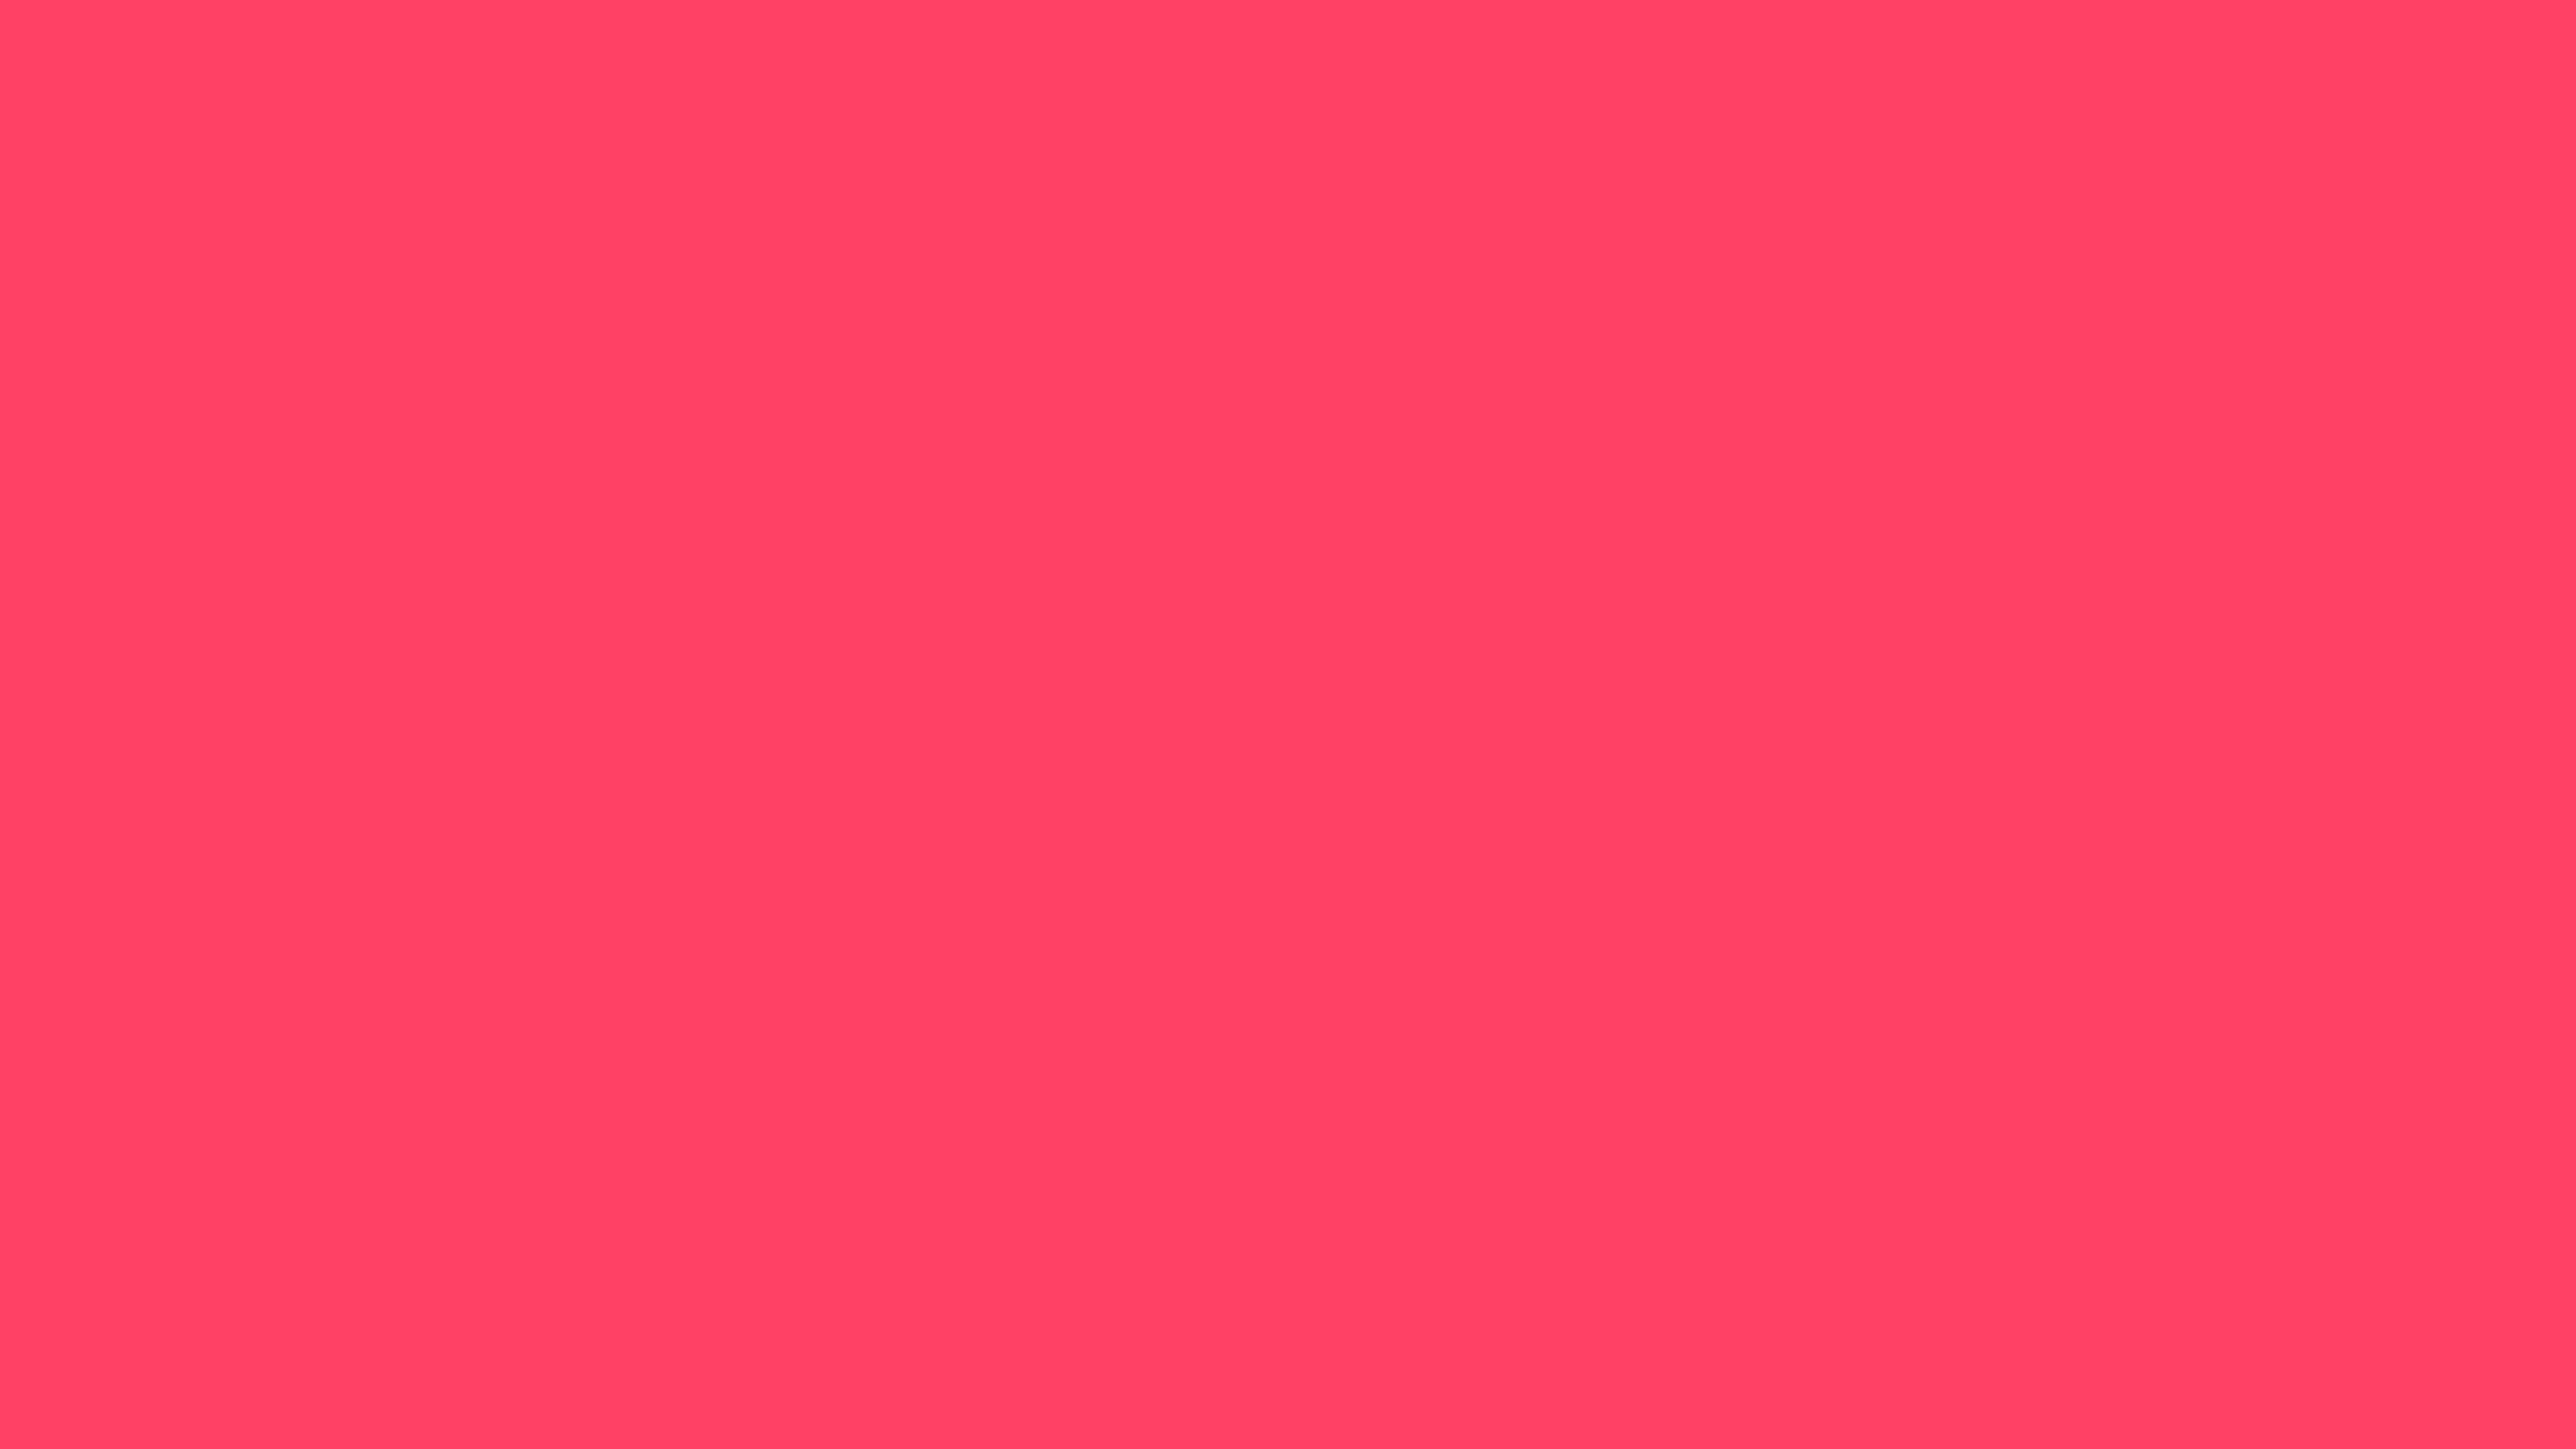 4096x2304 Neon Fuchsia Solid Color Background